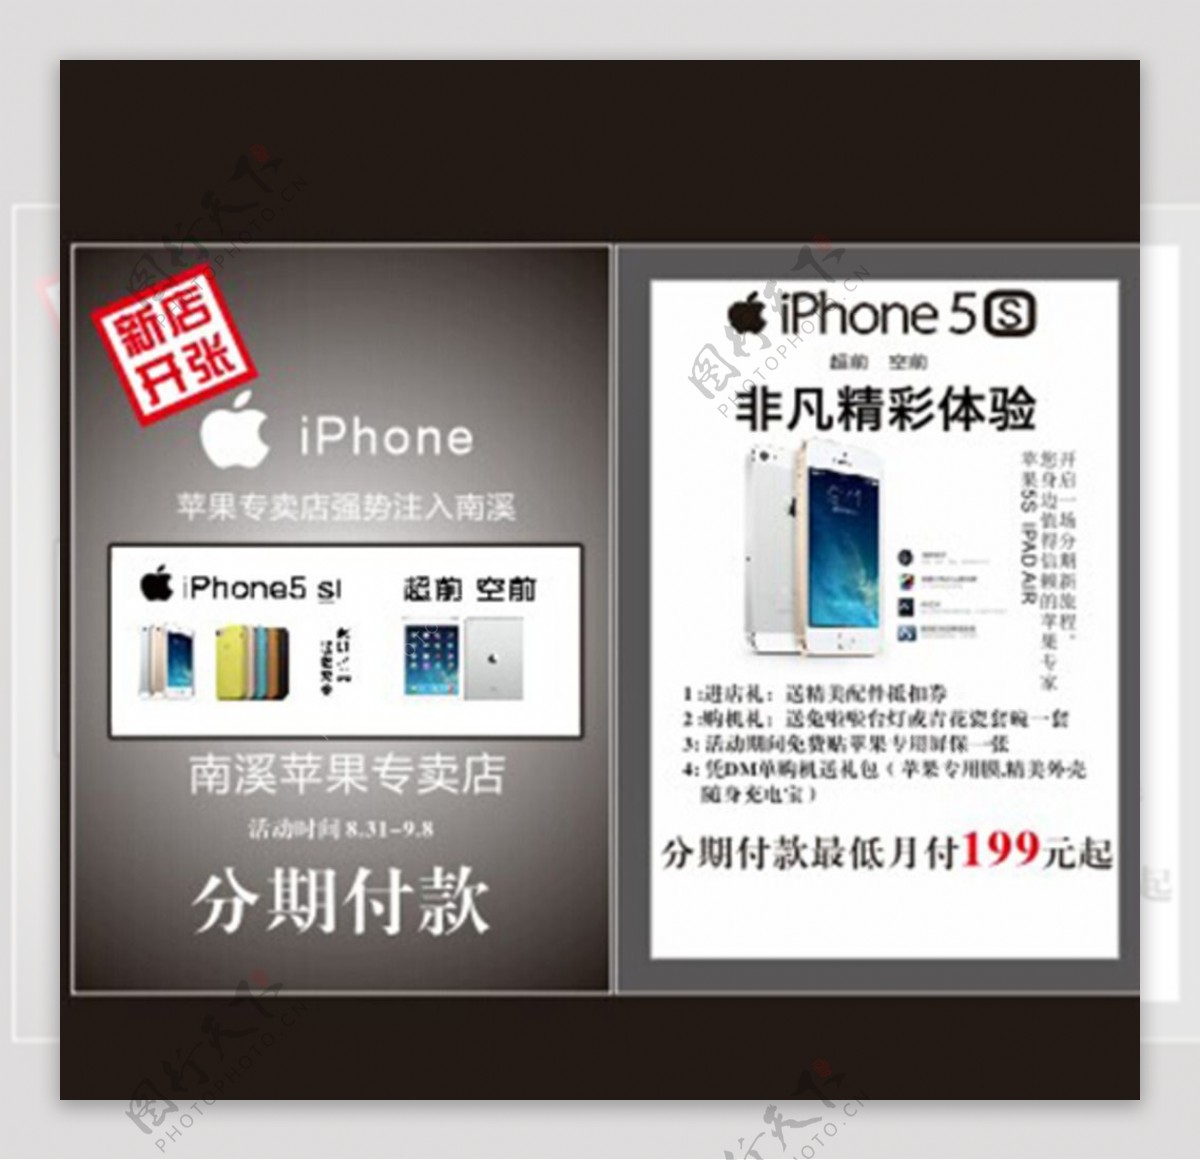 Iphkne5S苹果6DM图片